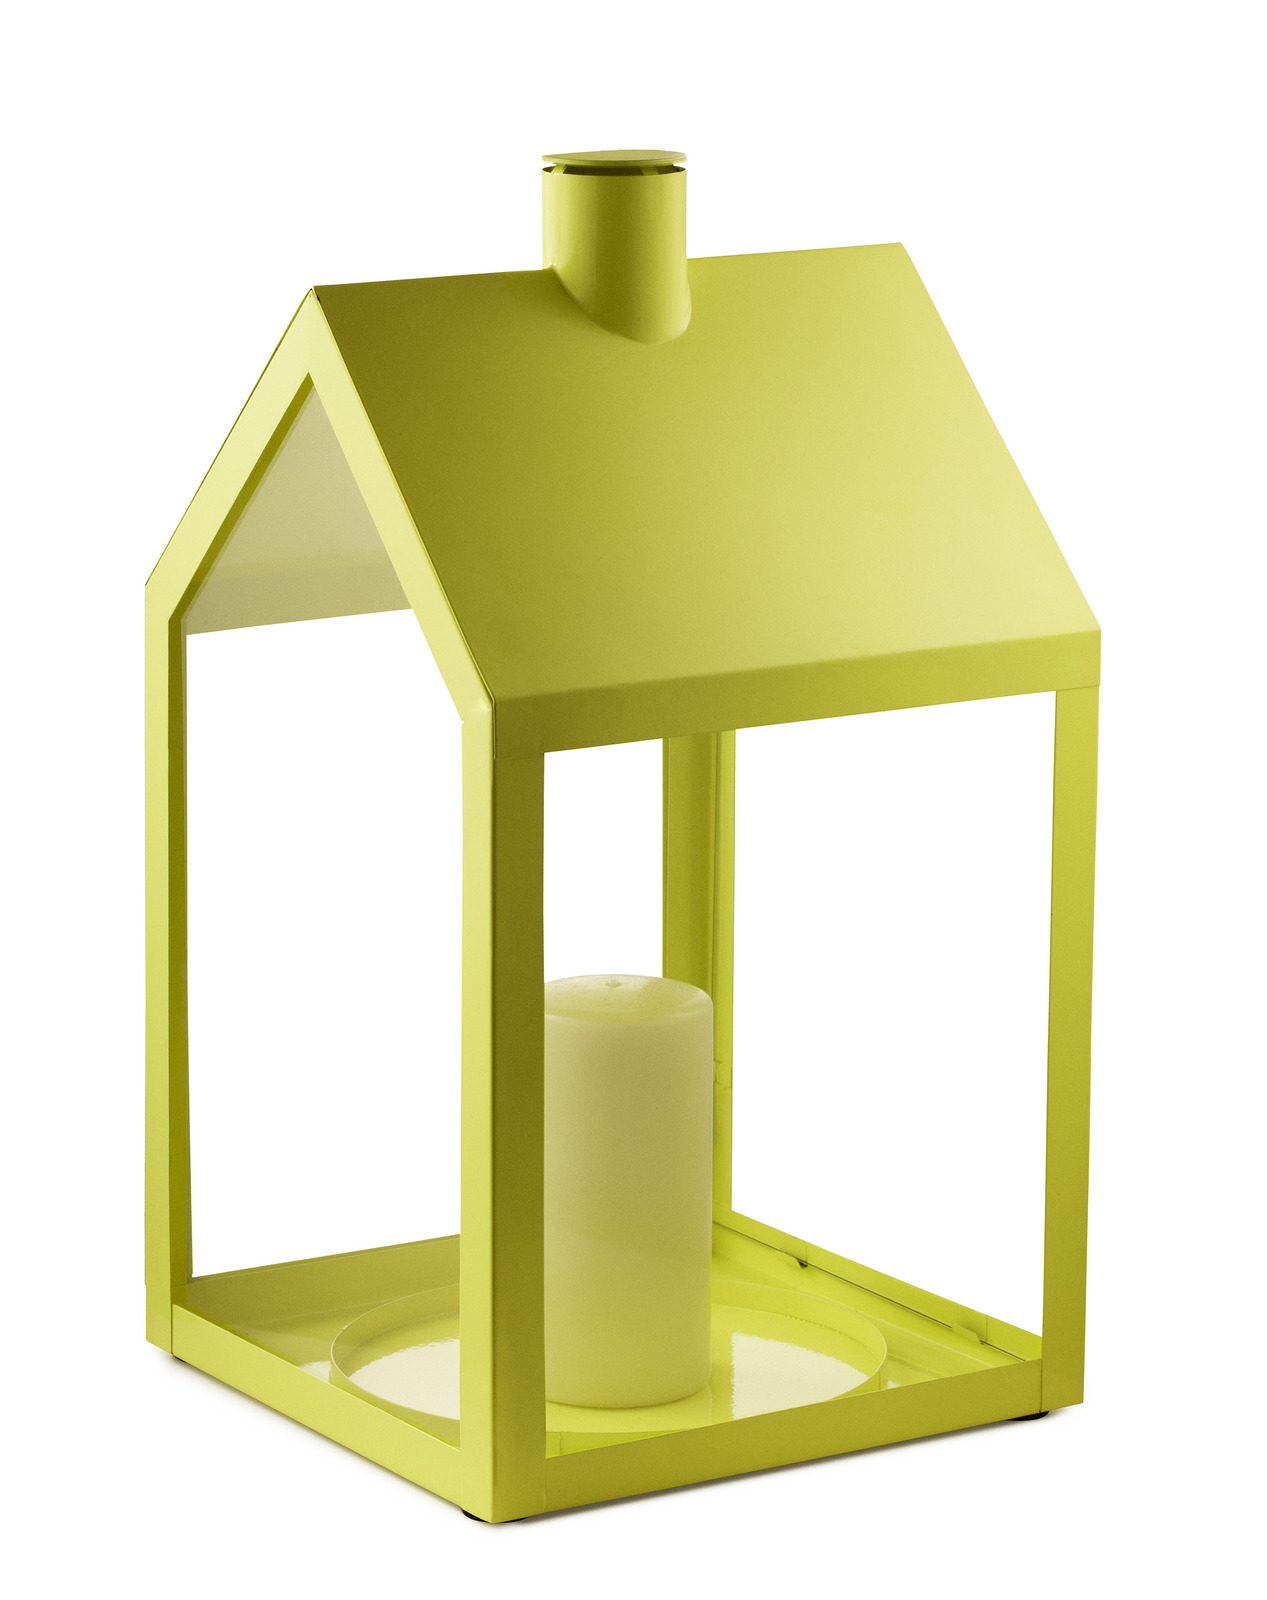 Svícen Light House od značky Normann Copenhagen, design Holmback & Nordentoft, lakovaná ocel, sklo, 24 × 47 × 24,5 cm, víc barev, www.designpropaganda.com, 2 505 Kč